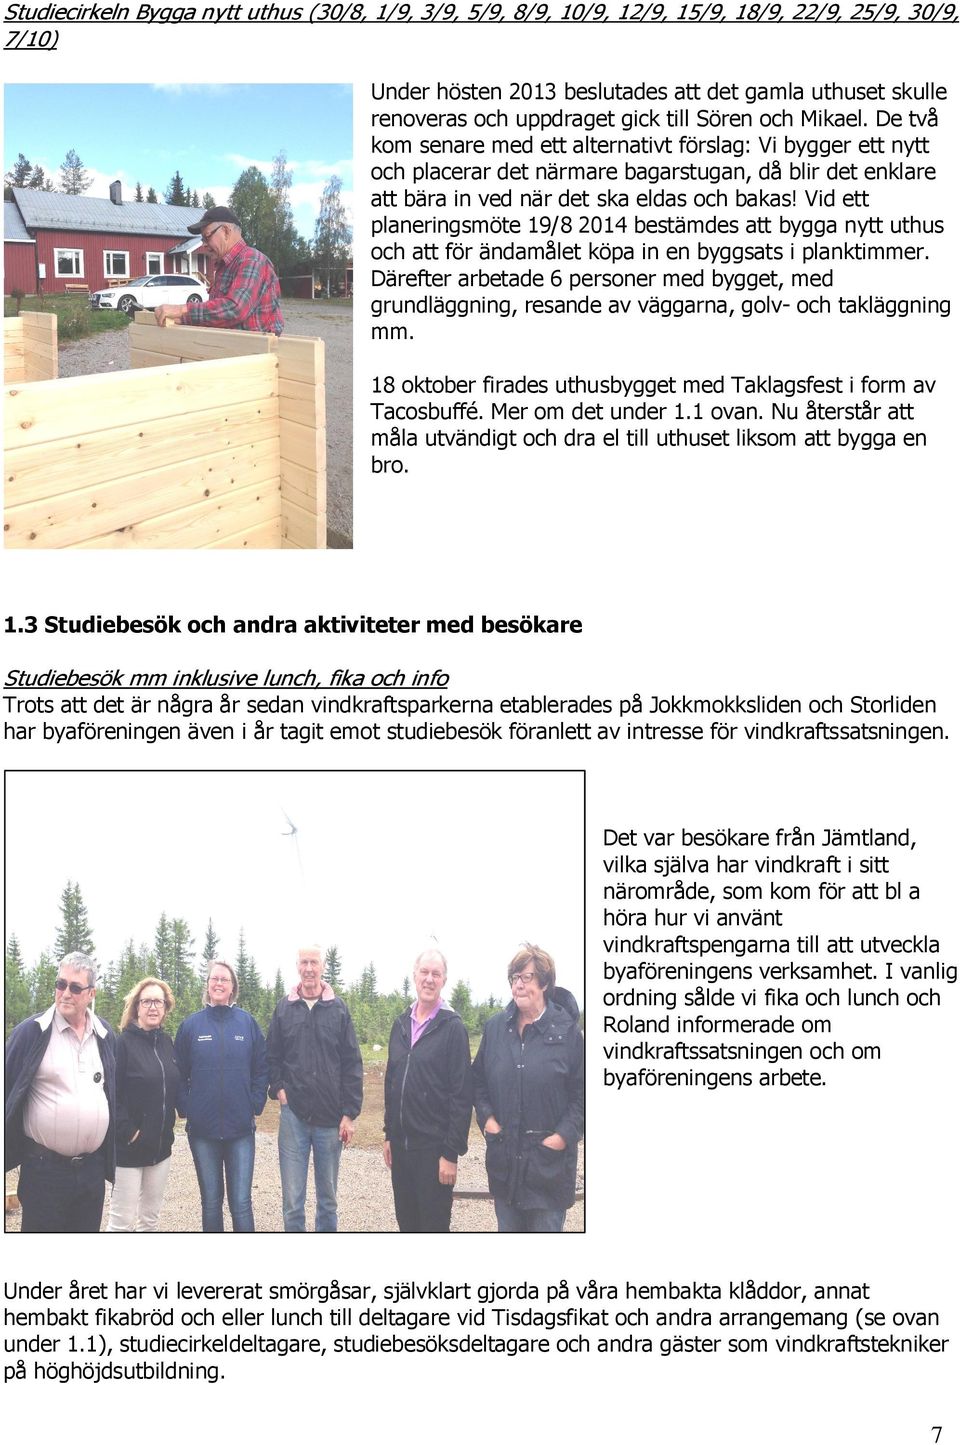 Vid ett planeringsmöte 19/8 2014 bestämdes att bygga nytt uthus och att för ändamålet köpa in en byggsats i planktimmer.